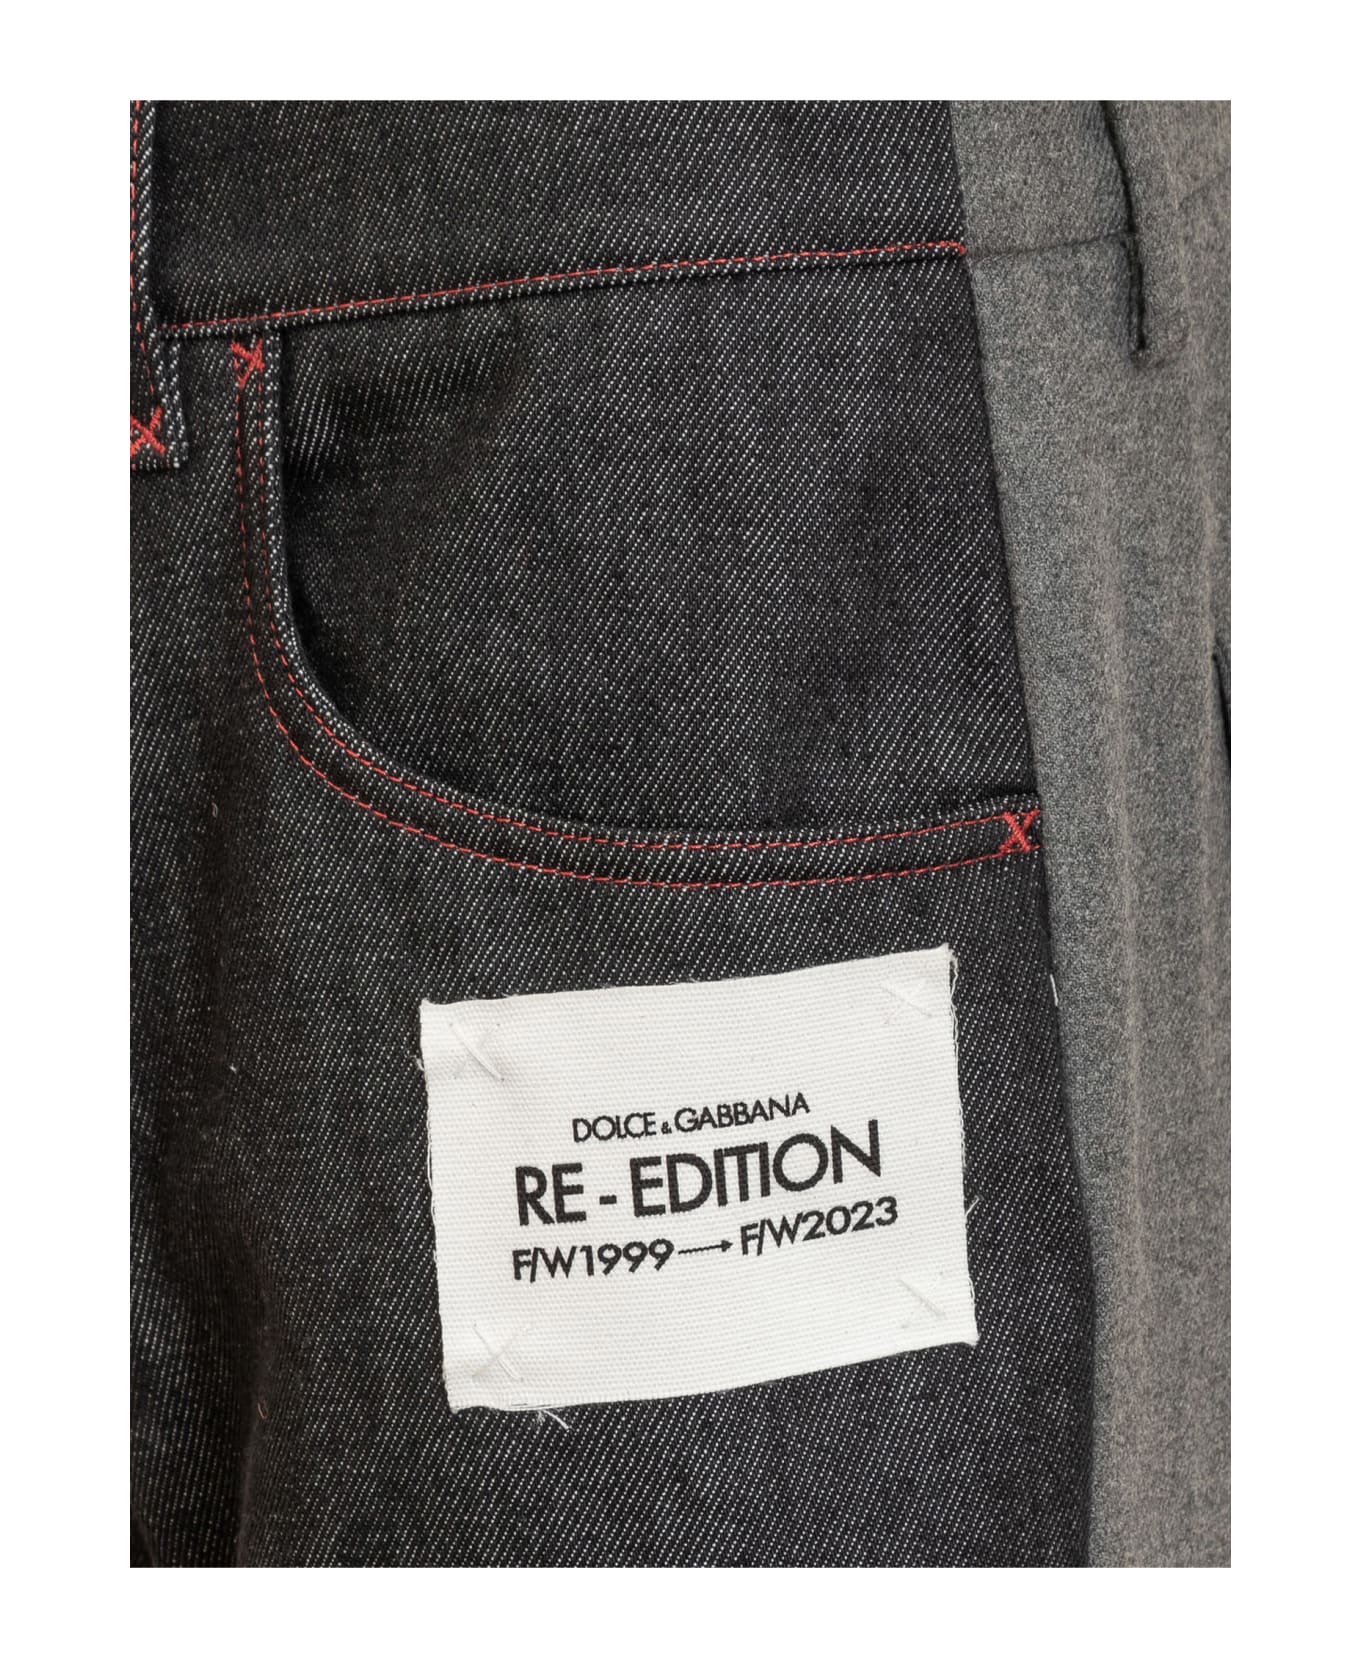 Dolce & Gabbana Re-edition Jeans - GRIGIO CHIARO ボトムス